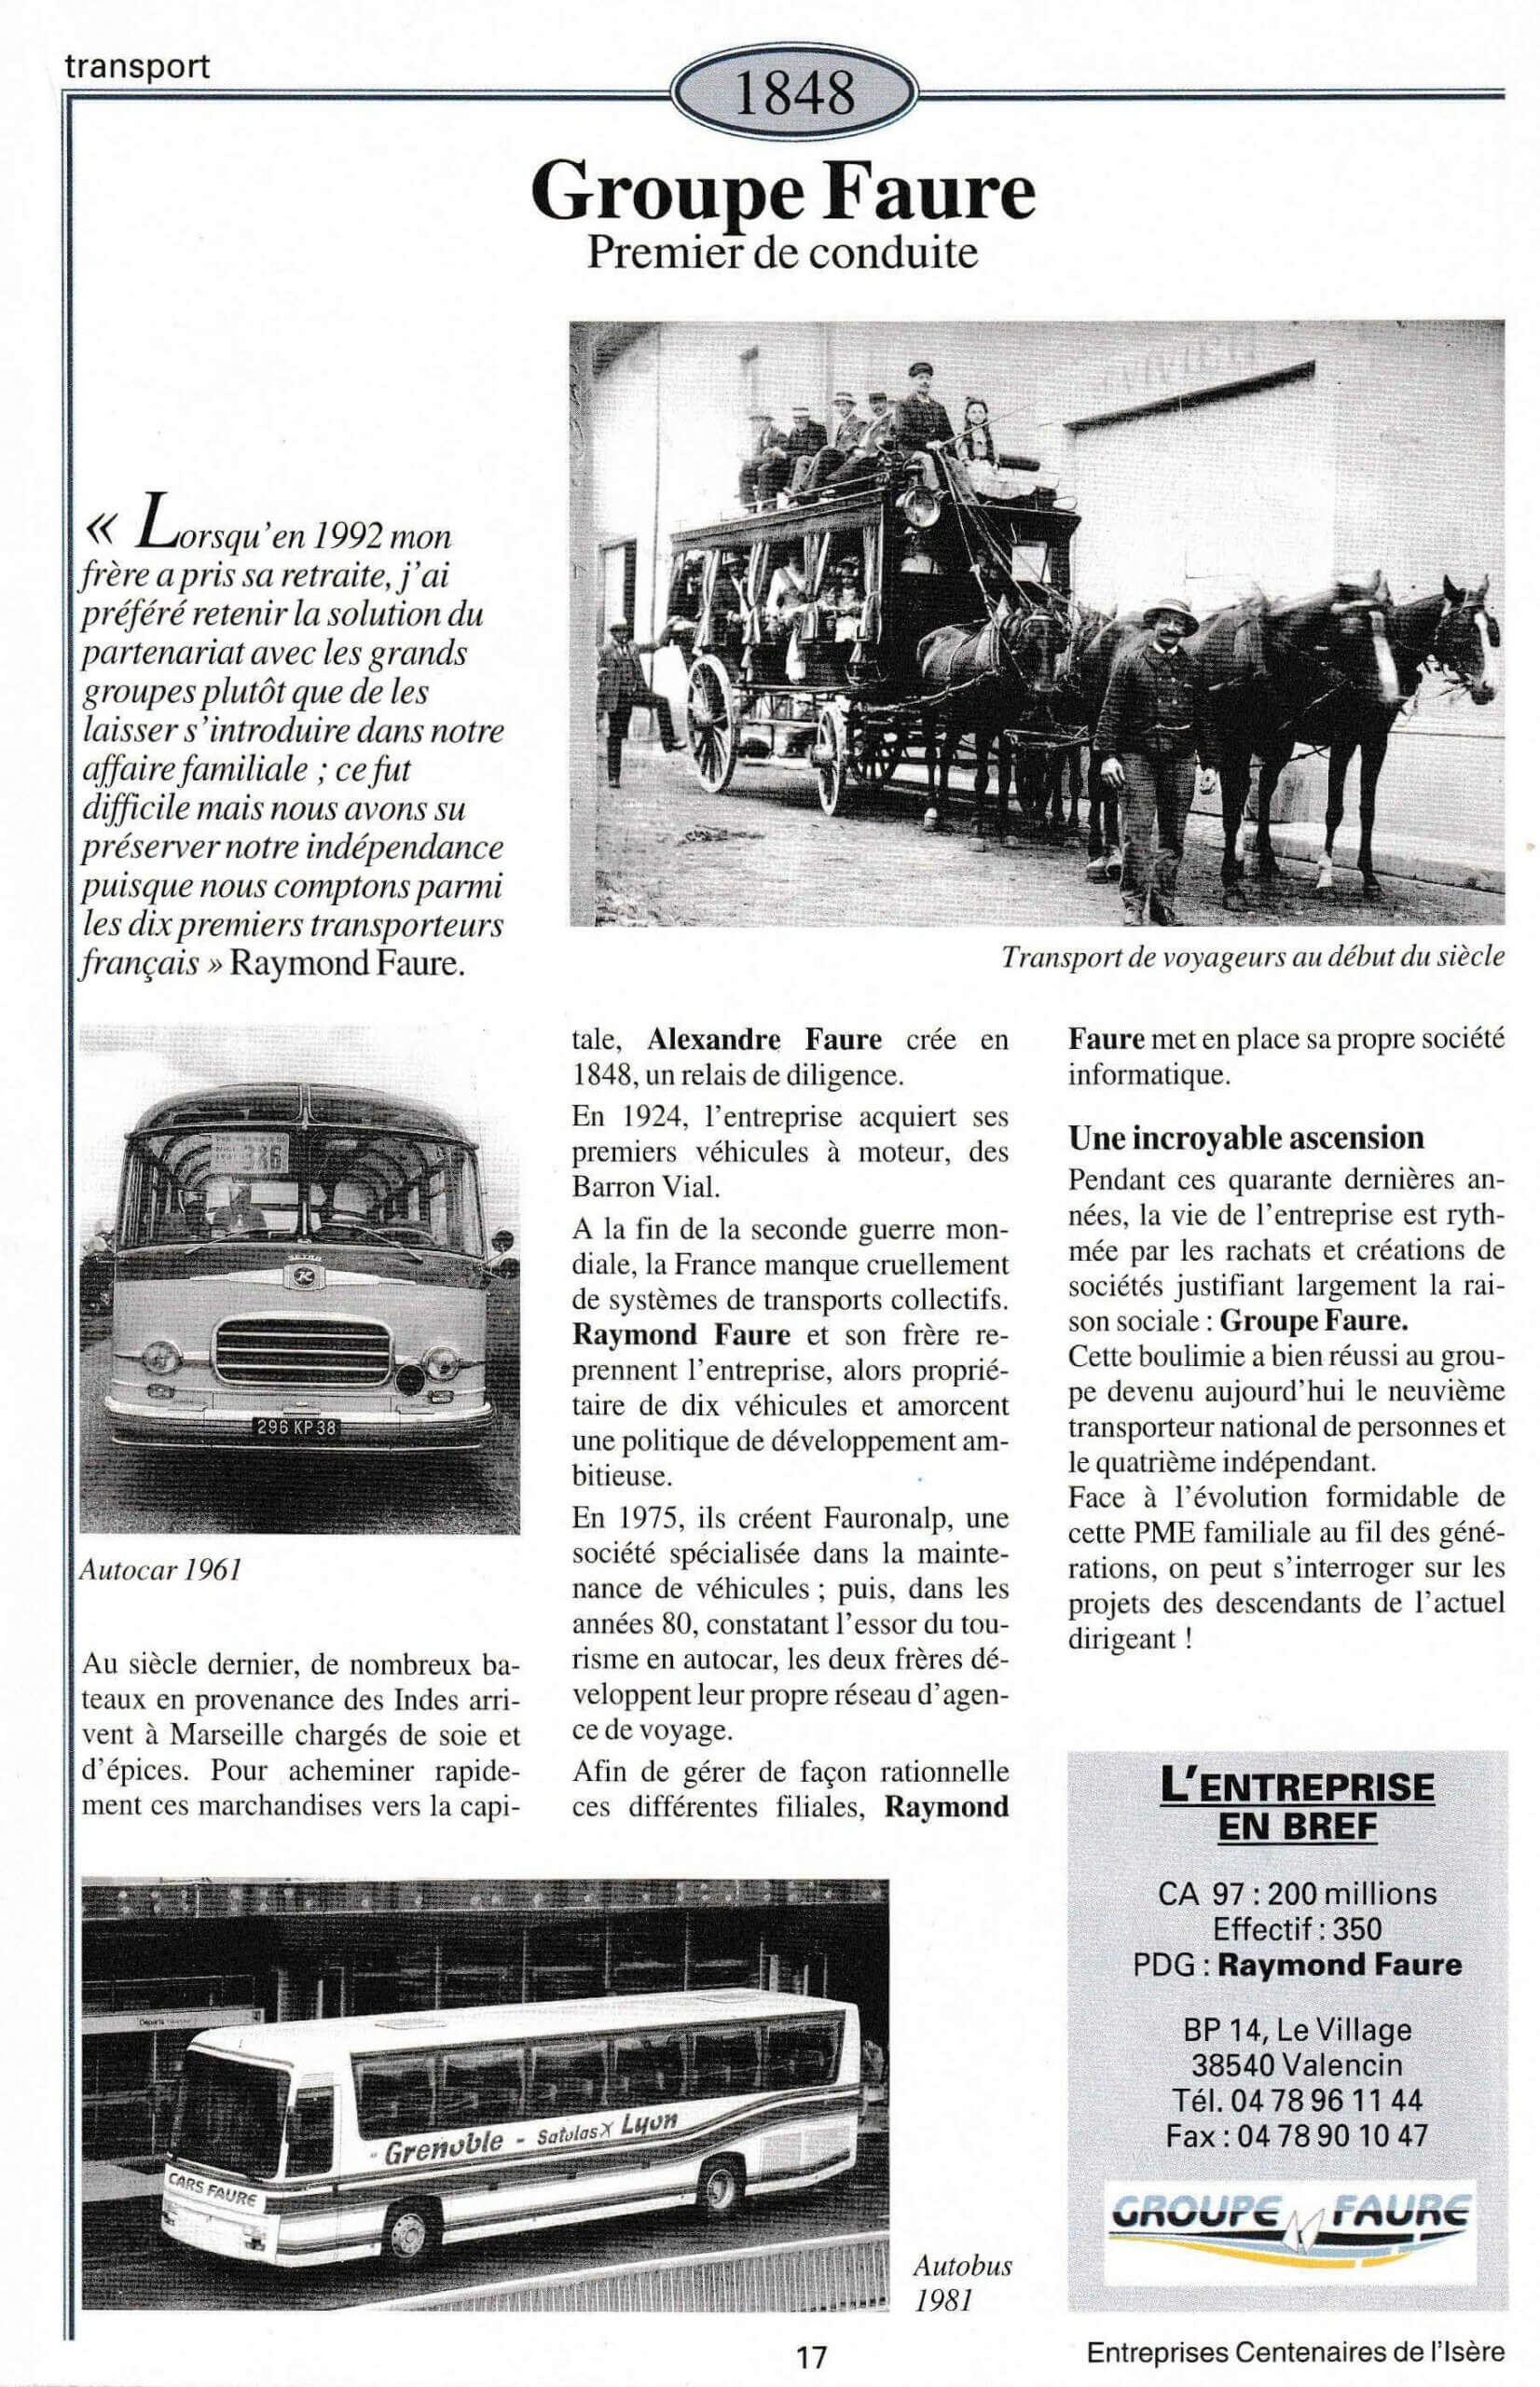 Groupe Faure - fiche du supplément "Entreprises centenaires en Isère", publié par Les affiches de Grenoble et du Dauphiné, juin 1998.